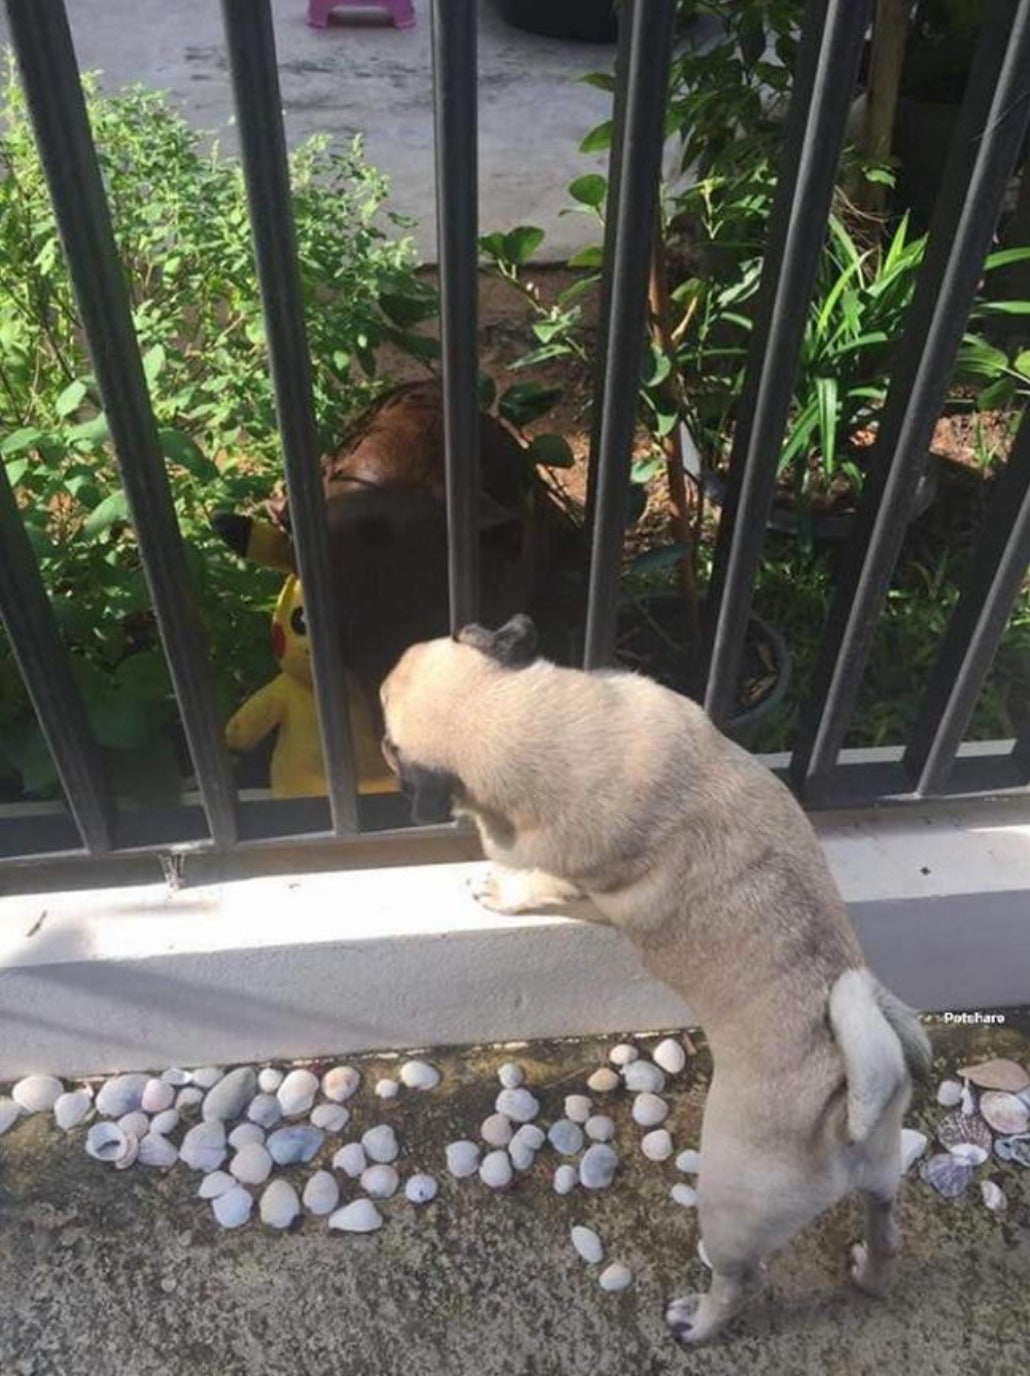 ลาบราดอร์คลั่งรักหมาปั๊กข้างบ้าน เดินคาบตุ๊กตาปิกาจูมาจีบข้างรั้วทุกวัน